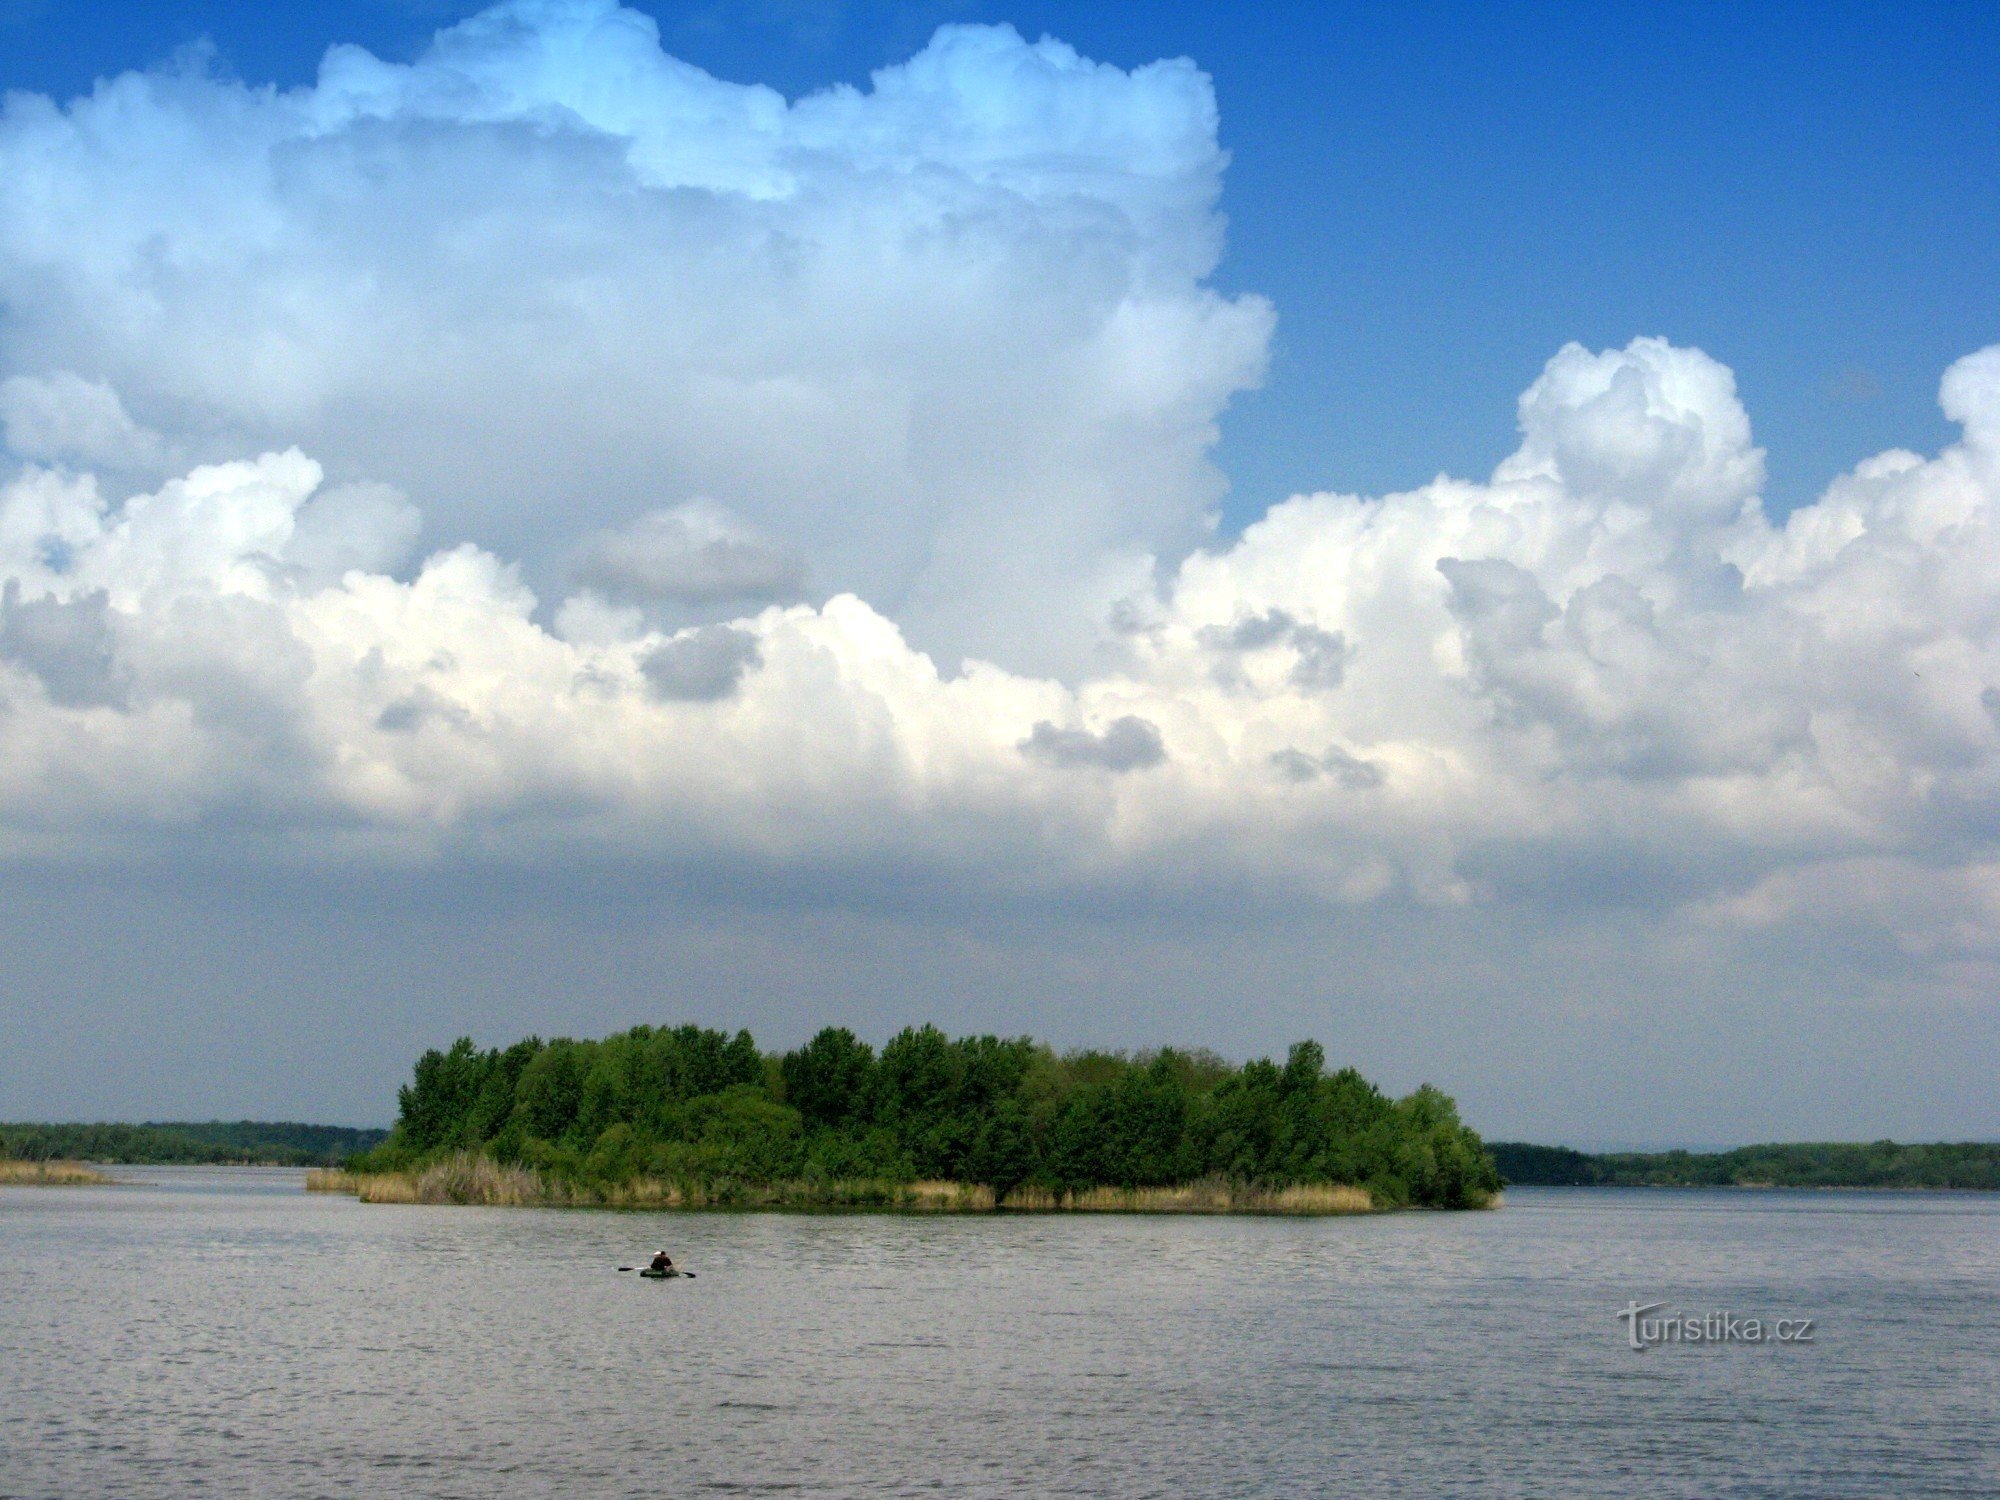 Novomlyn reservoirer under Pálava